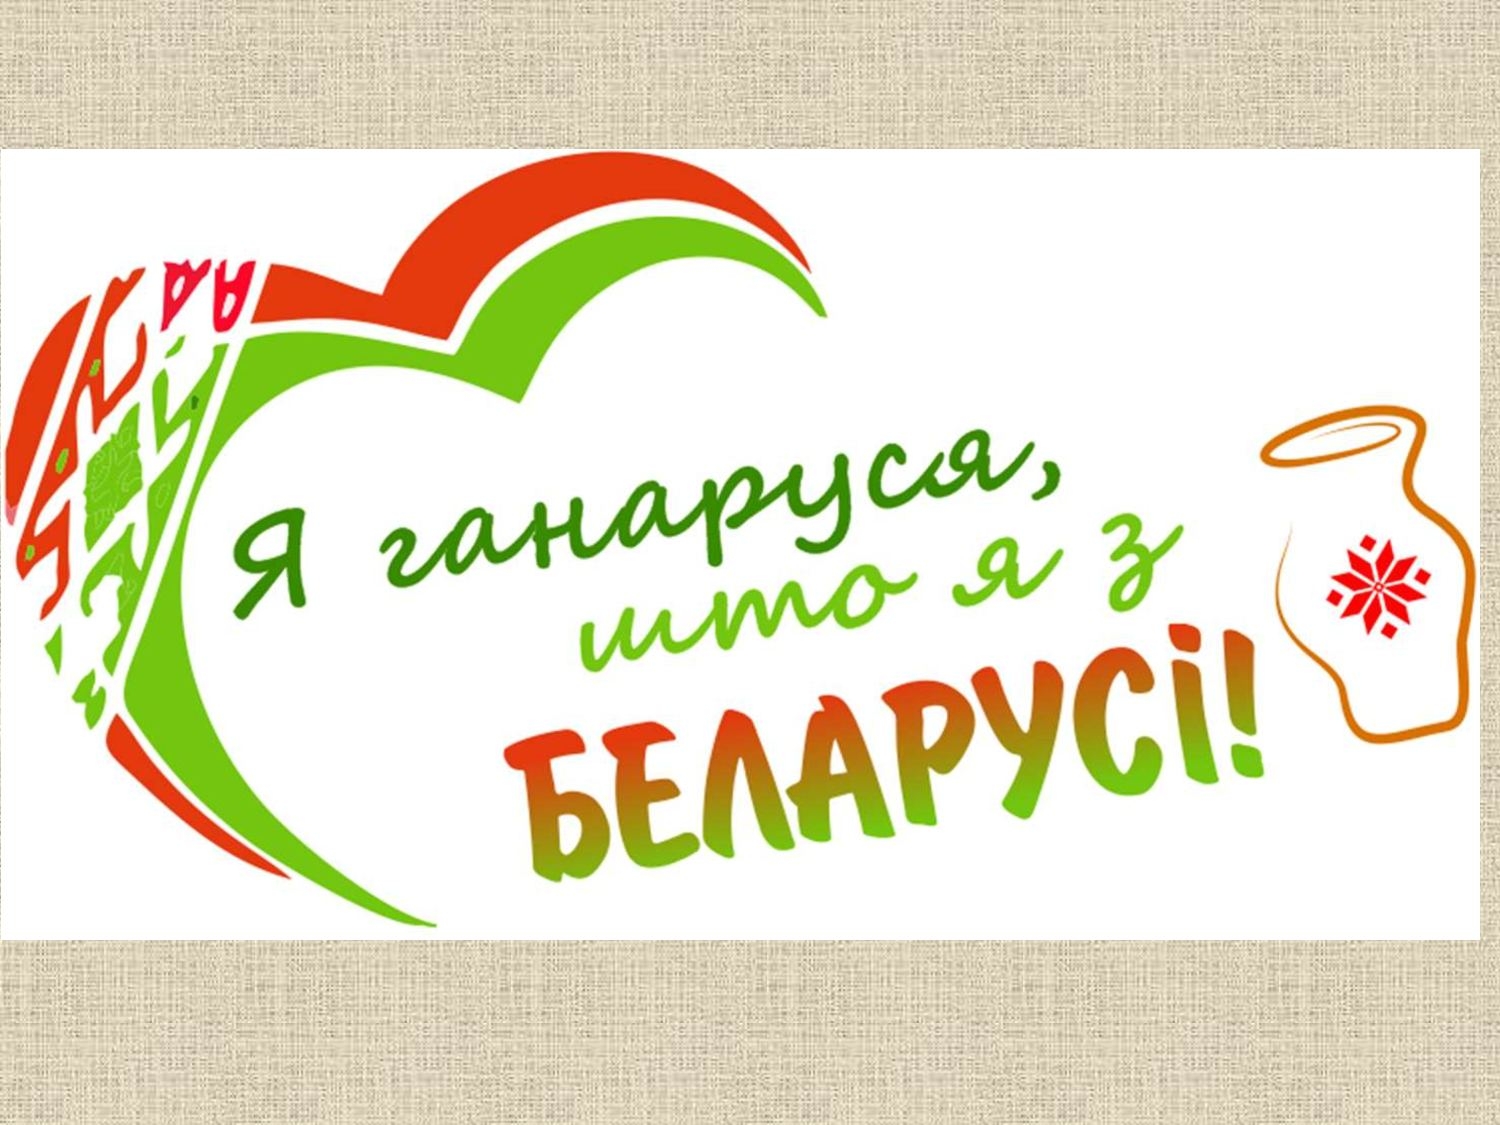 Па чым. Белорусская эмблема. Белорусские надписи. Лозунг за Беларусь. Патриотический лозунг Беларуси.